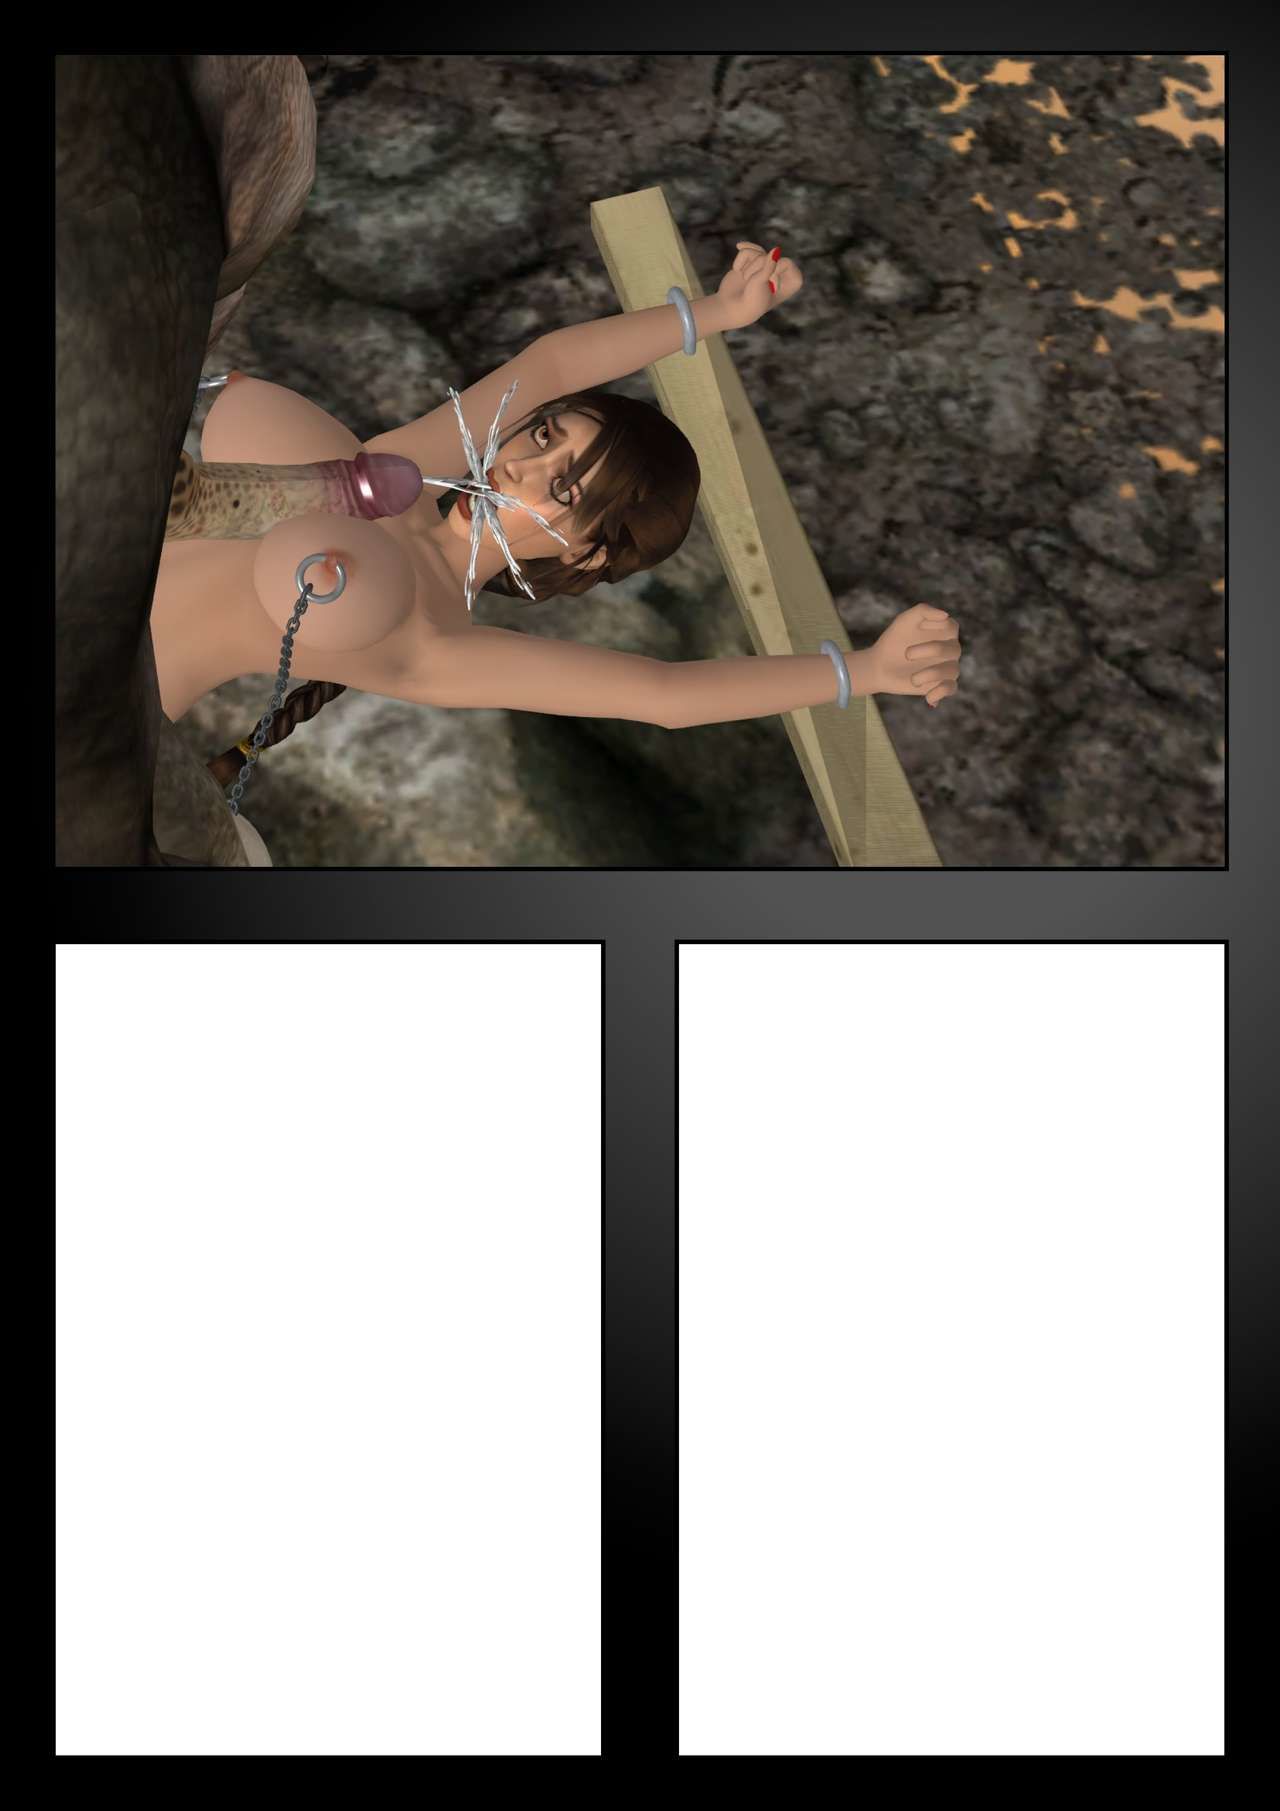 Lara Croft przeciwko w Minotaura w.i.p. część 2